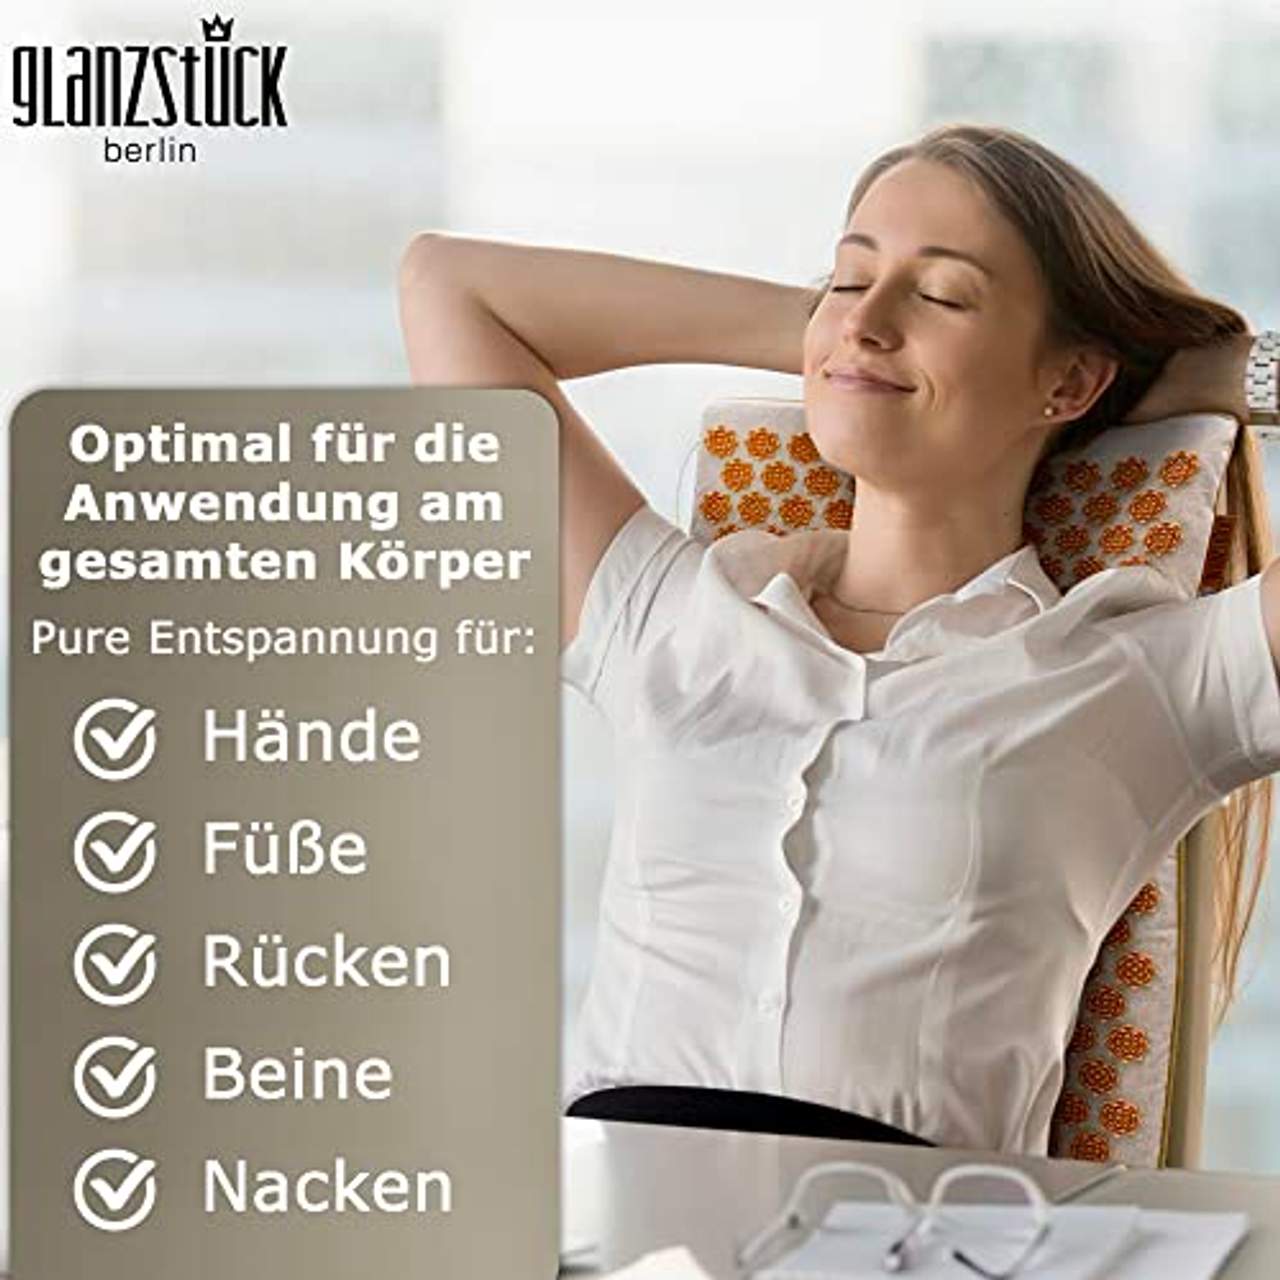 Glanzstück Berlin Health Collection: XL Akupressurmatte Set Premium aus Leinen